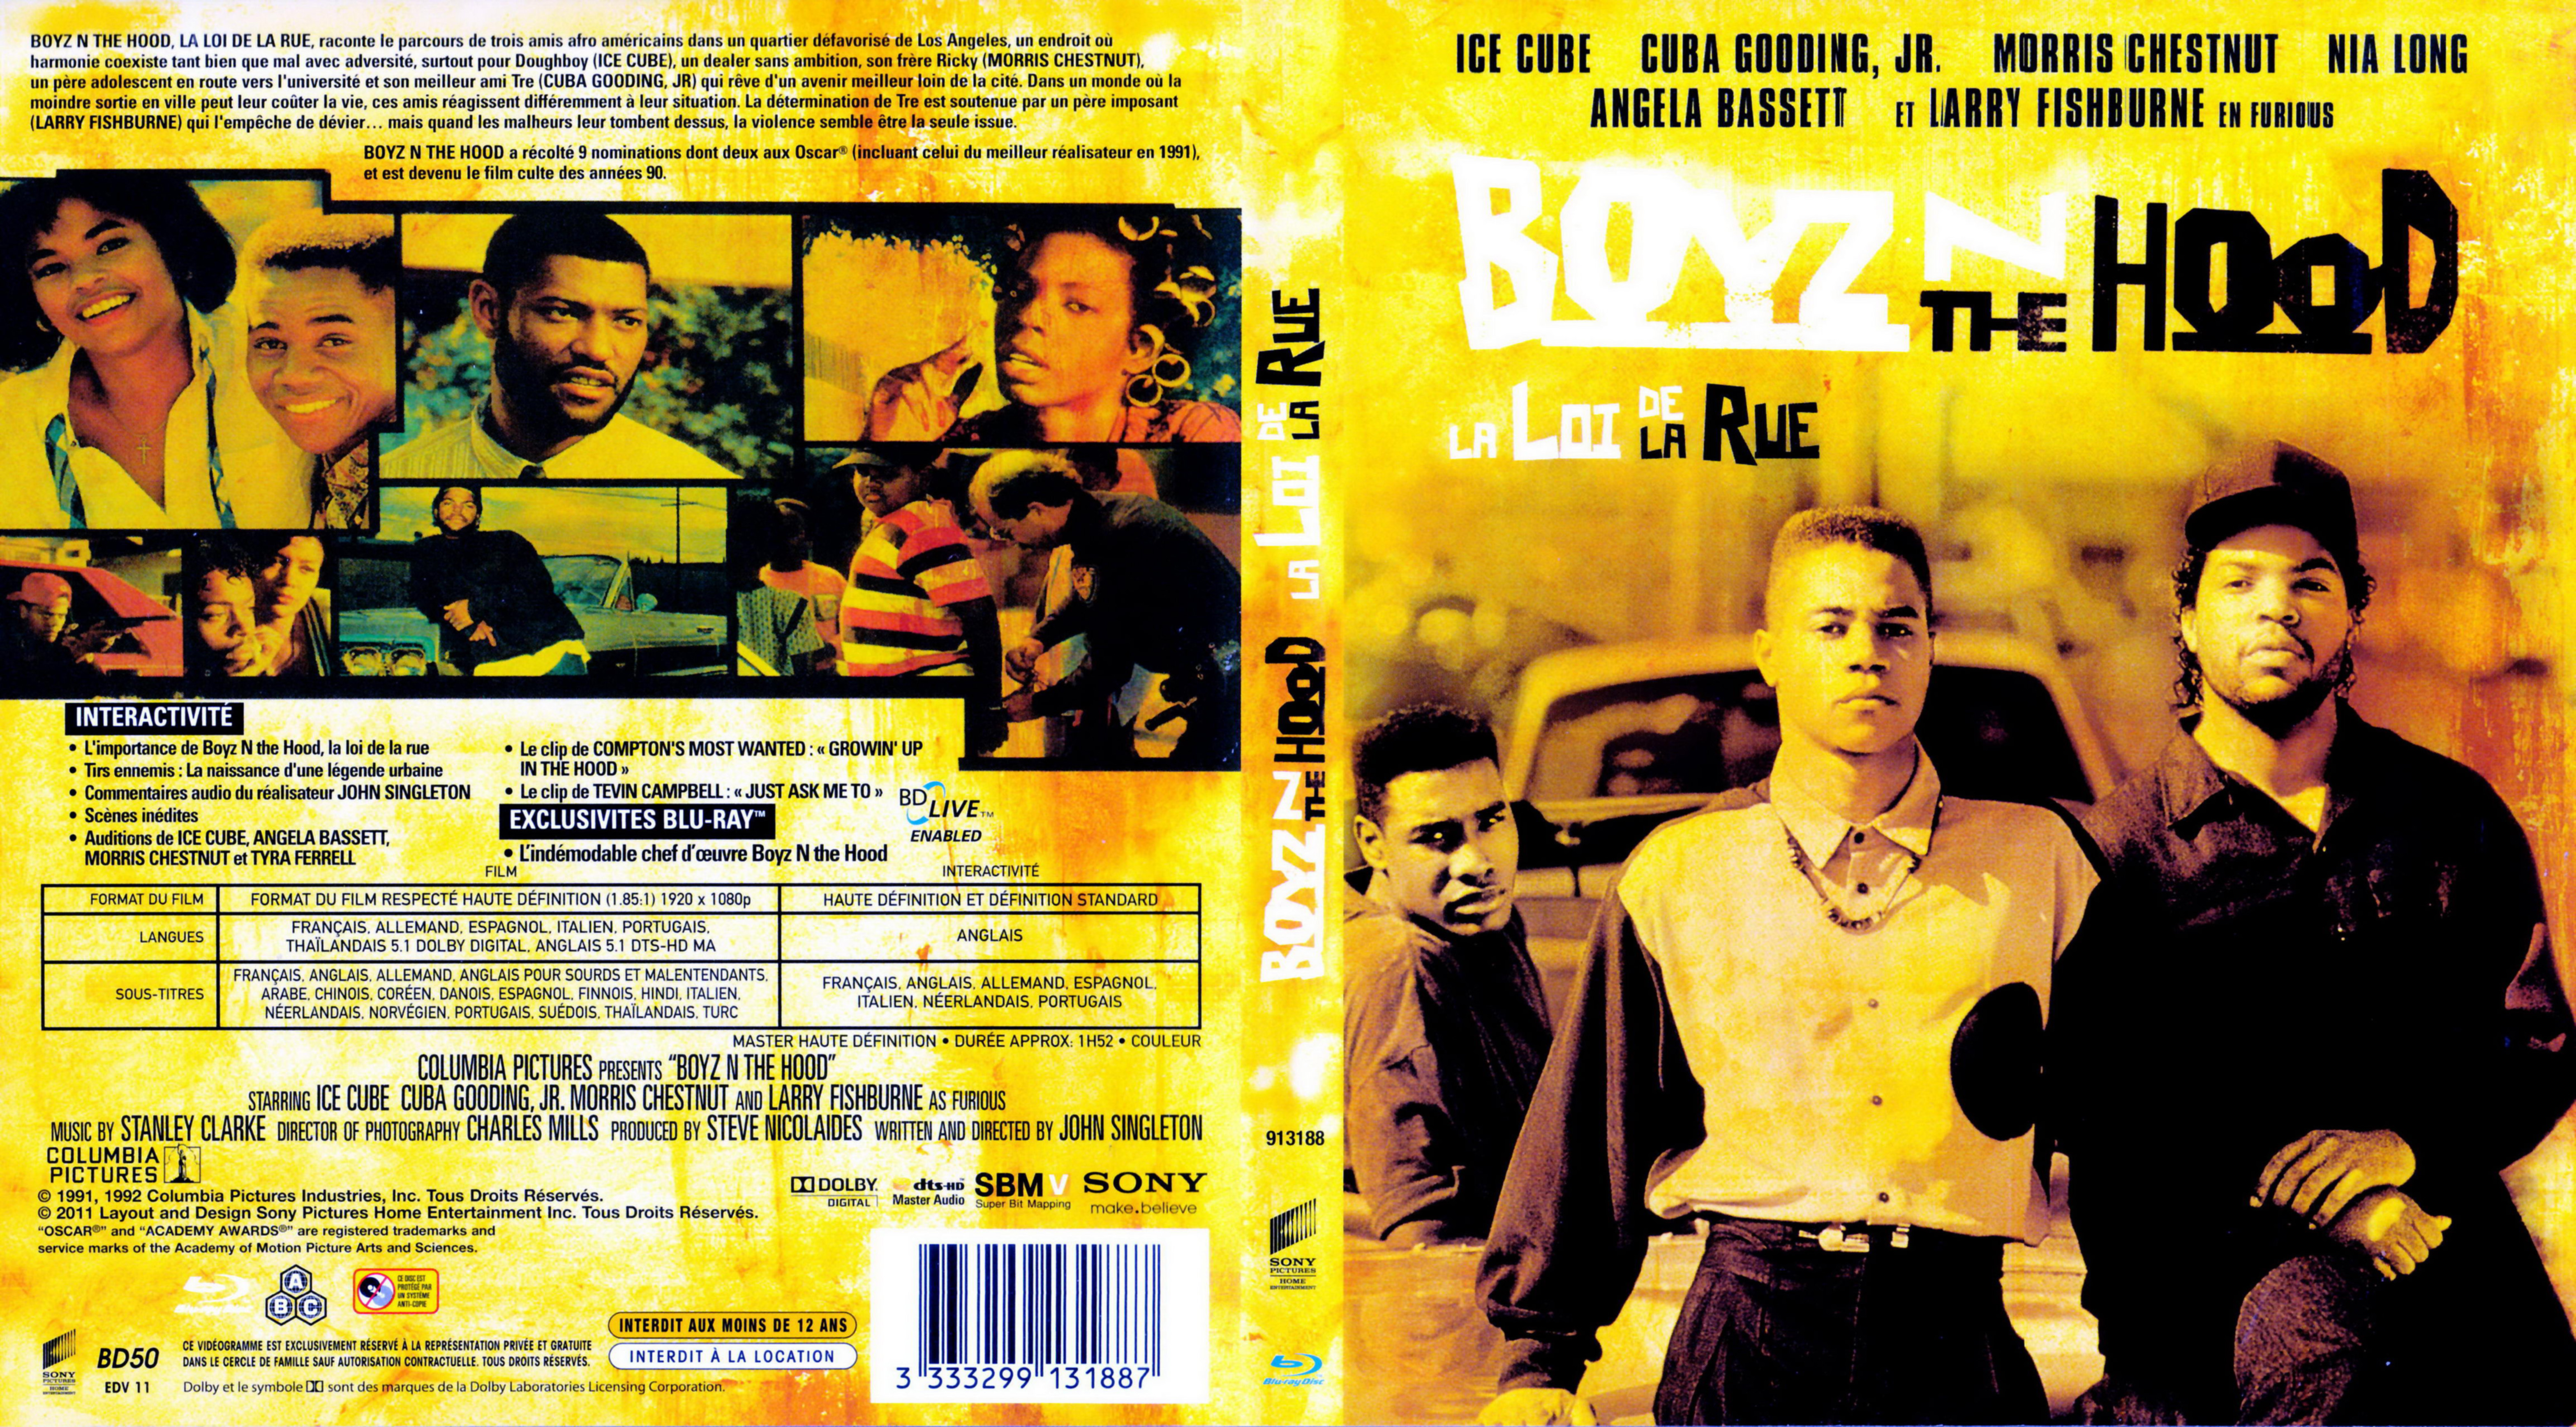 Jaquette DVD Boyz n the hood (BLU-RAY)